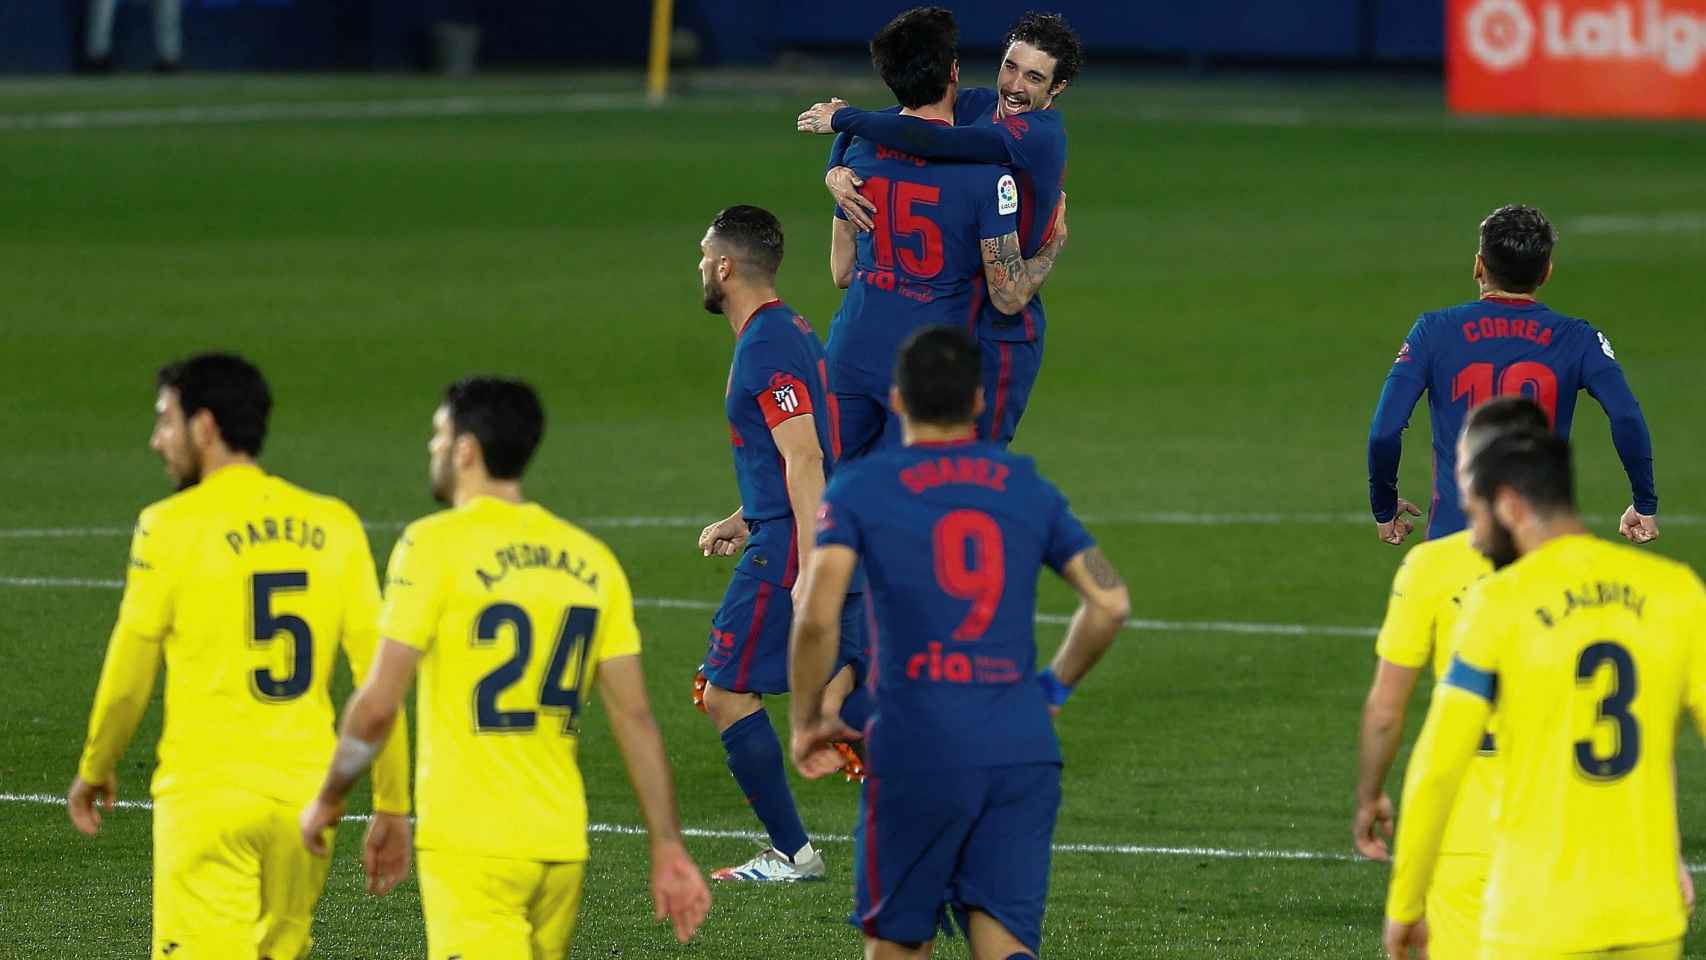 Savic celebrando su gol contra el Villarreal / EFE